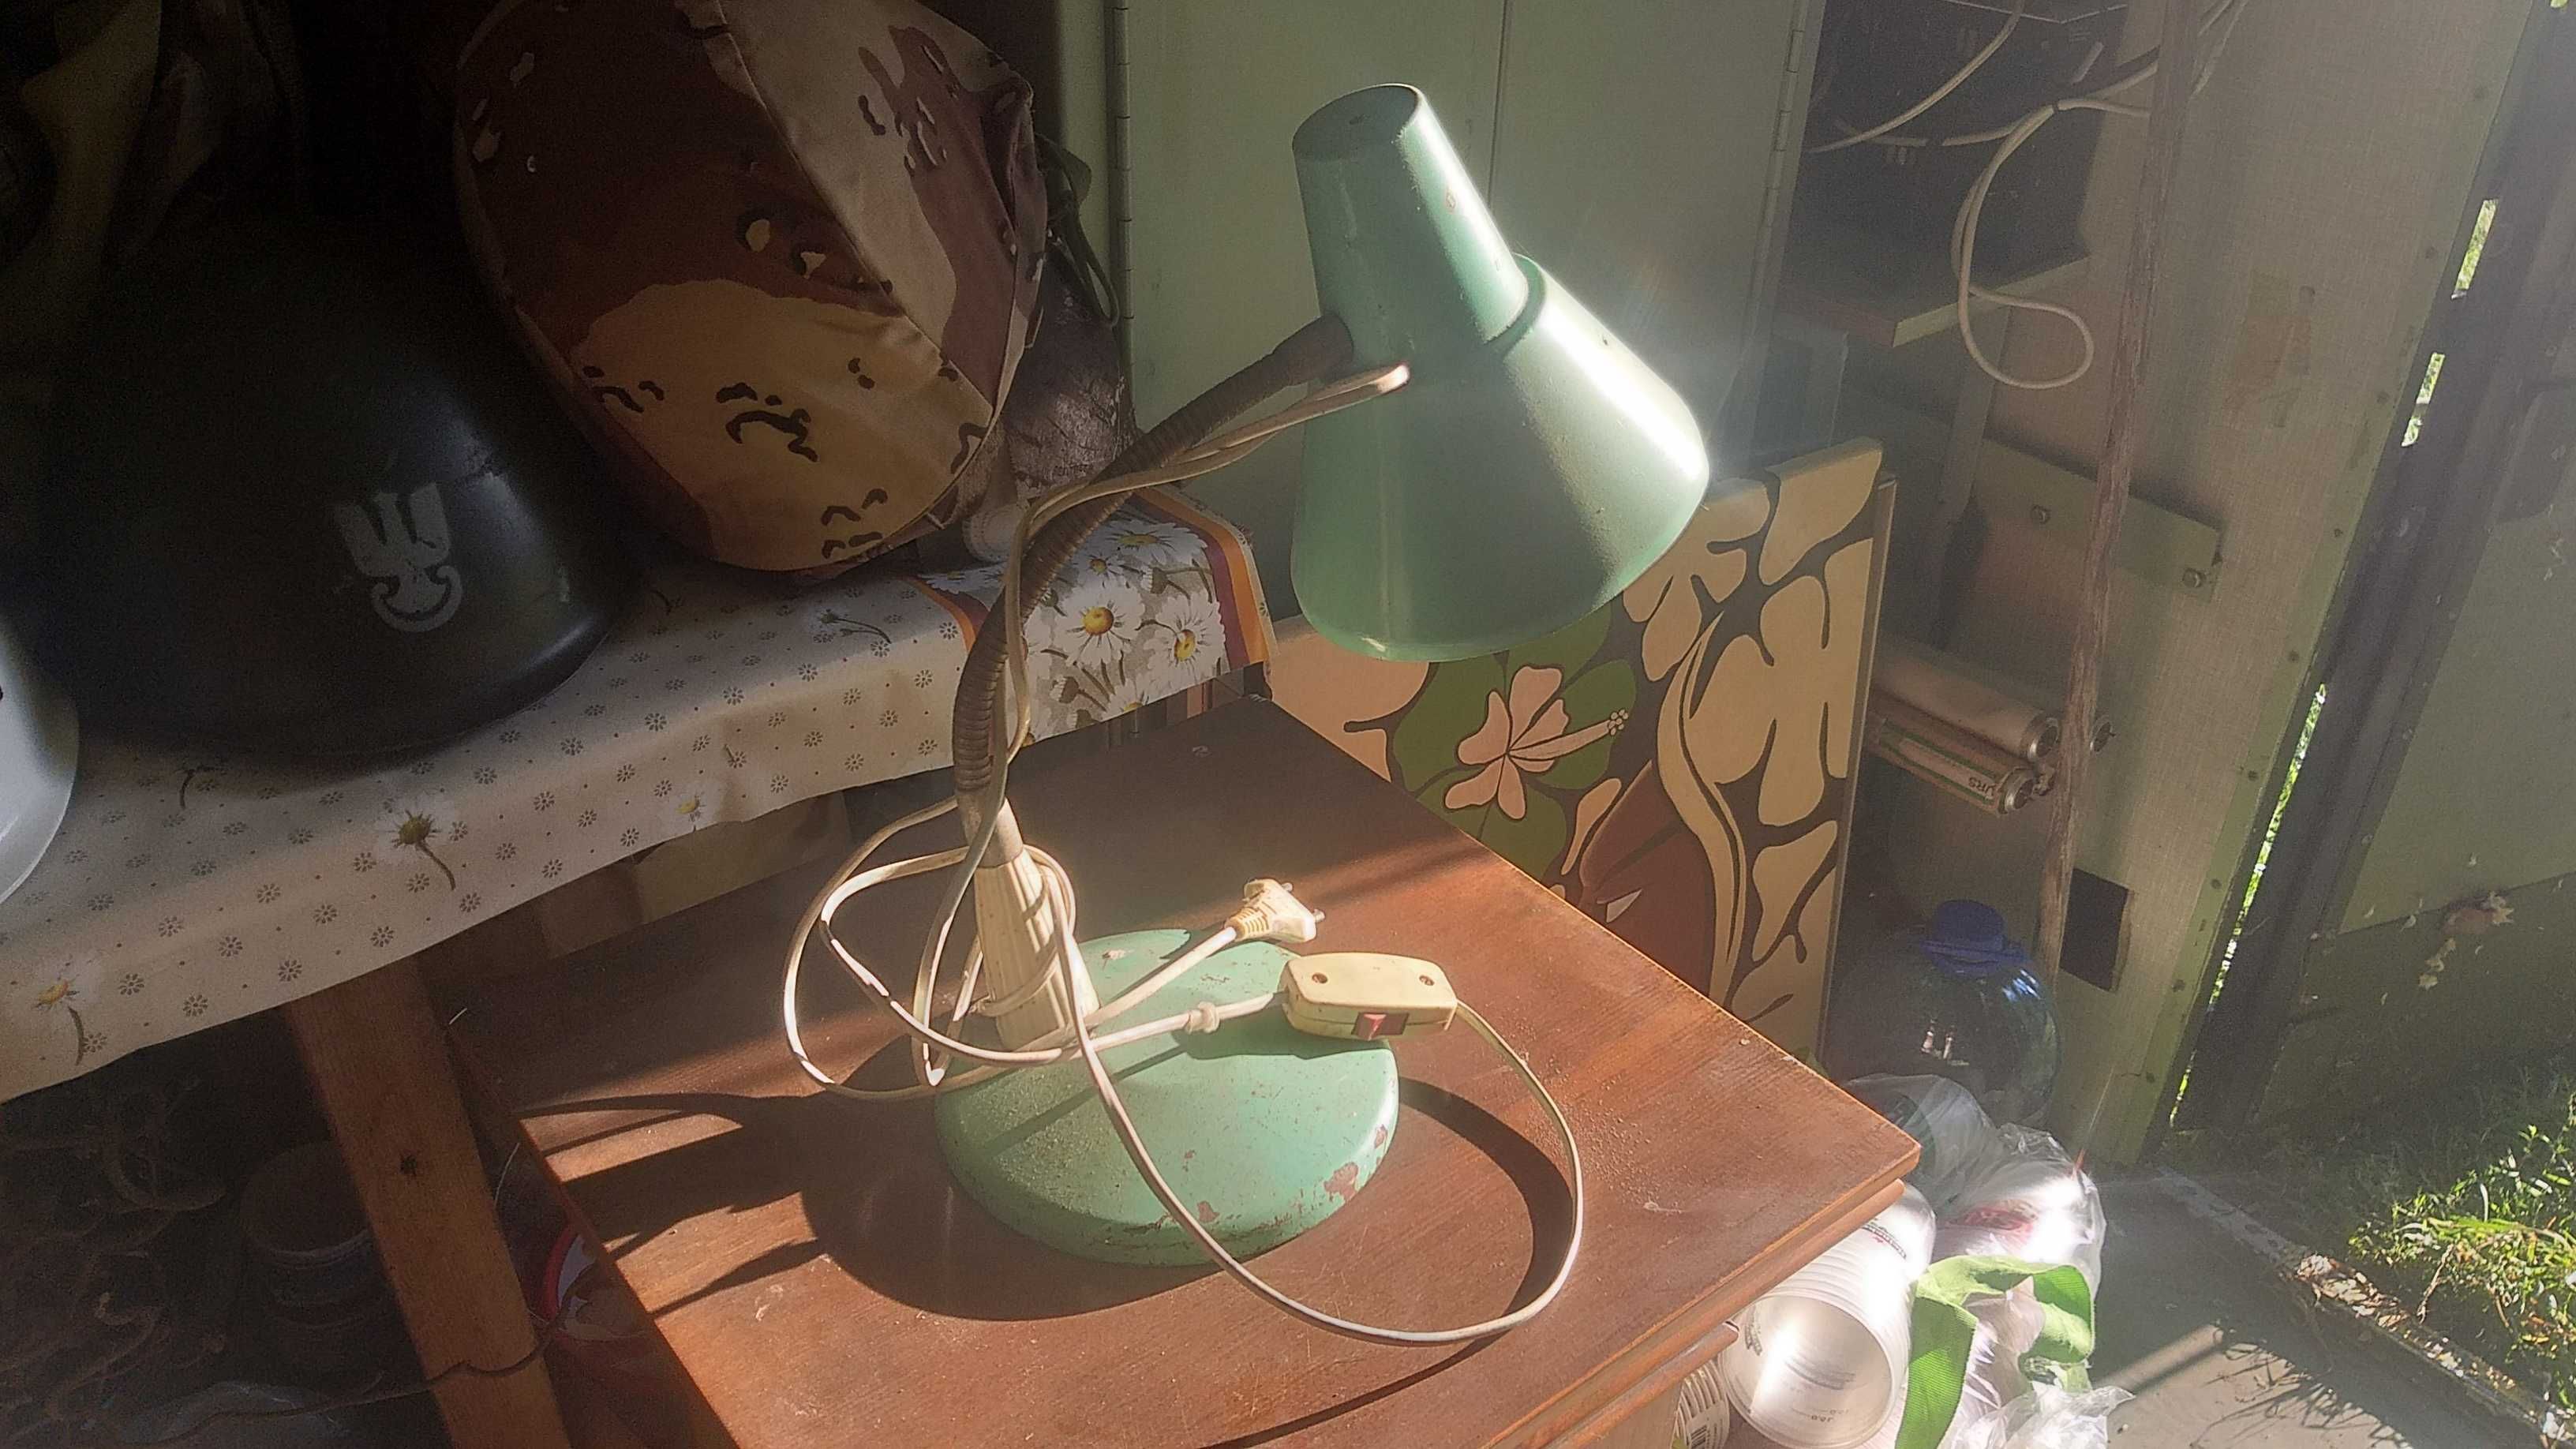 Stara lampka na biurko